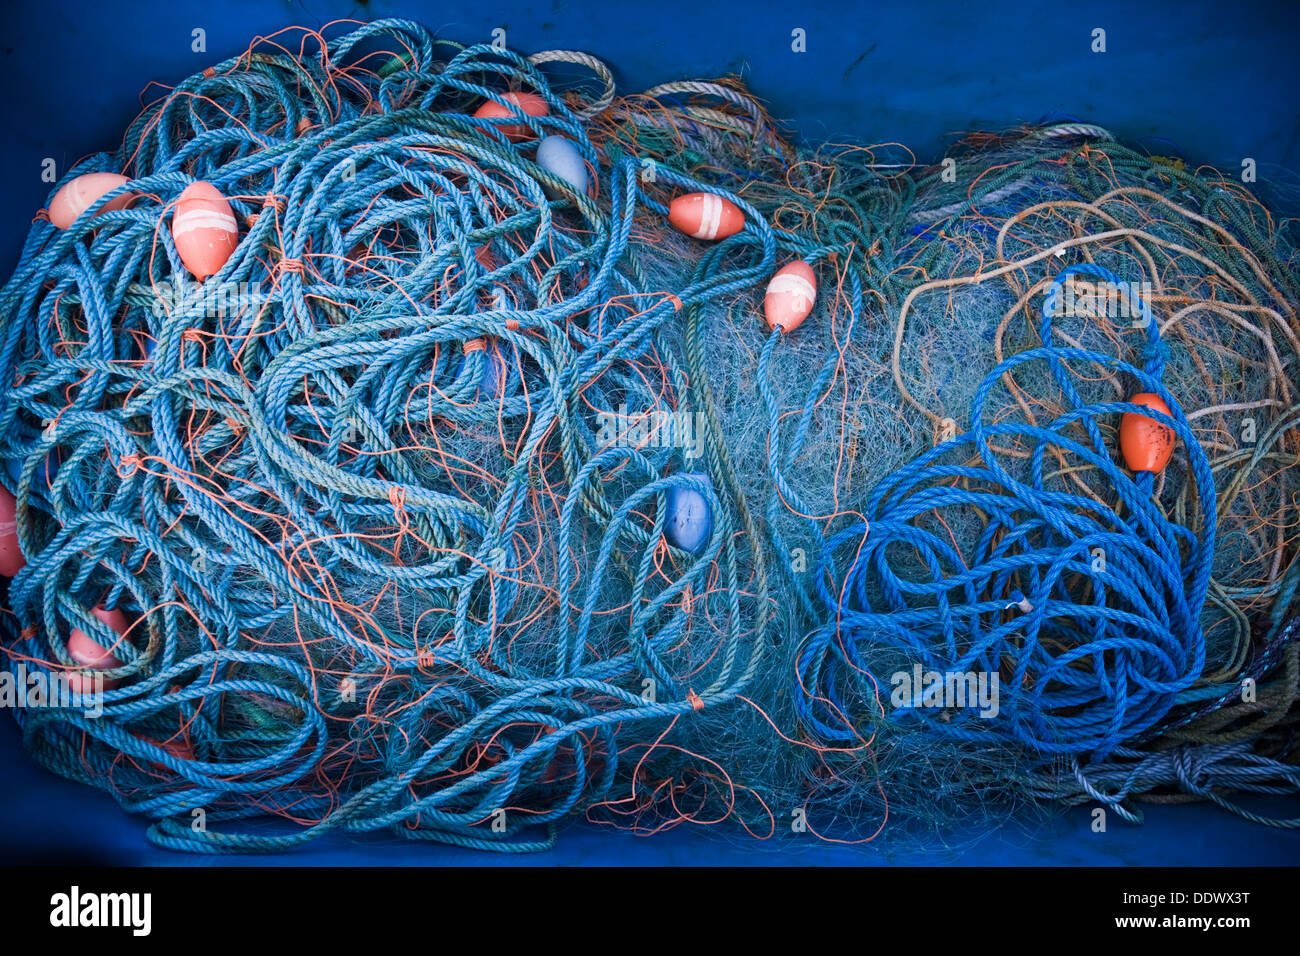 Nahaufnahme von einem großen Fischernetz versammelten sich in einem blauen Kunststoff-Container. Stockfoto